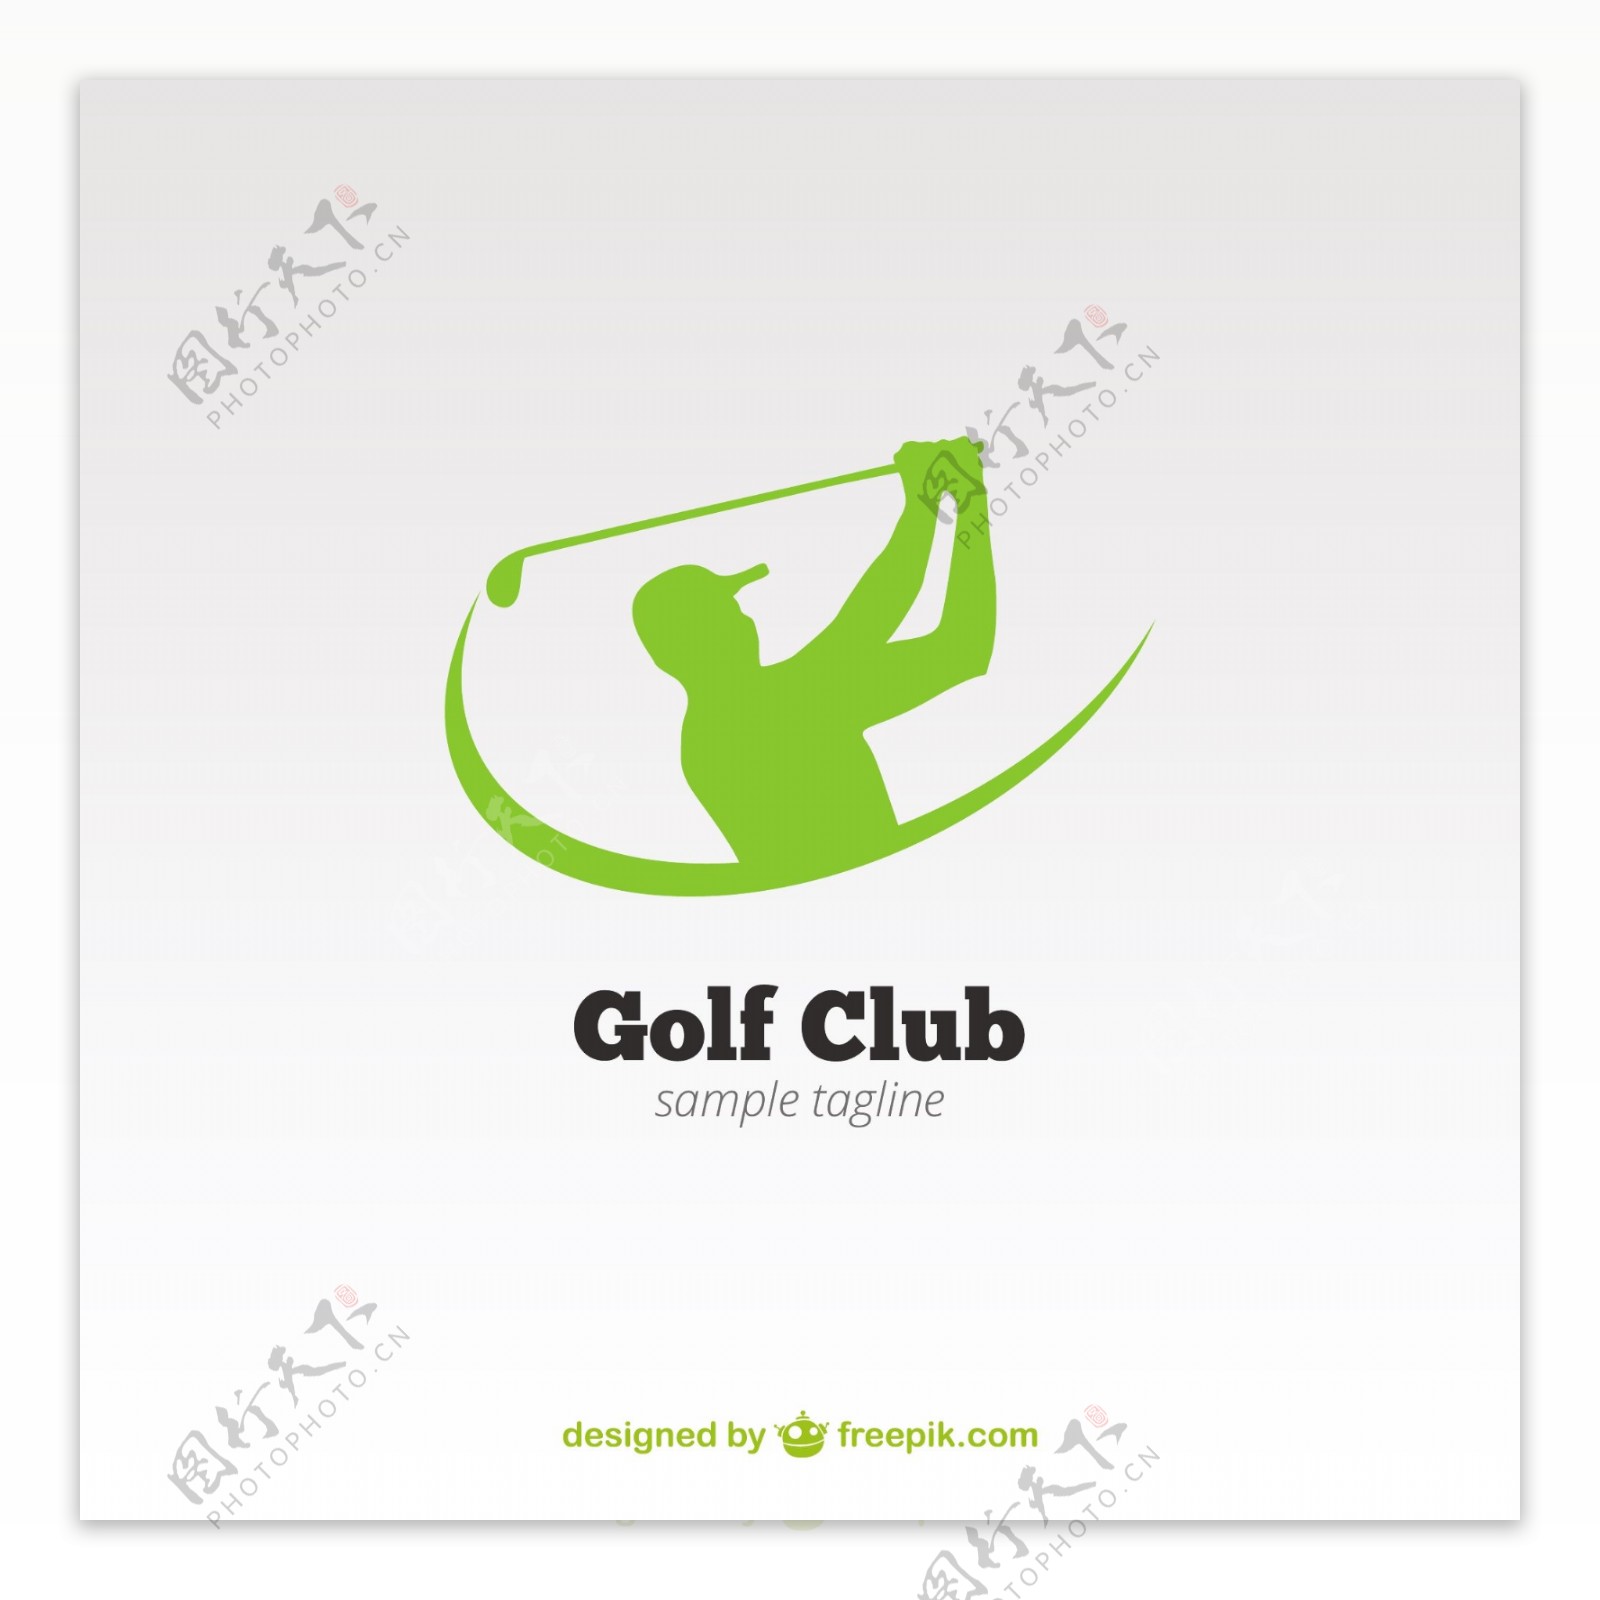 高尔夫俱乐部标志